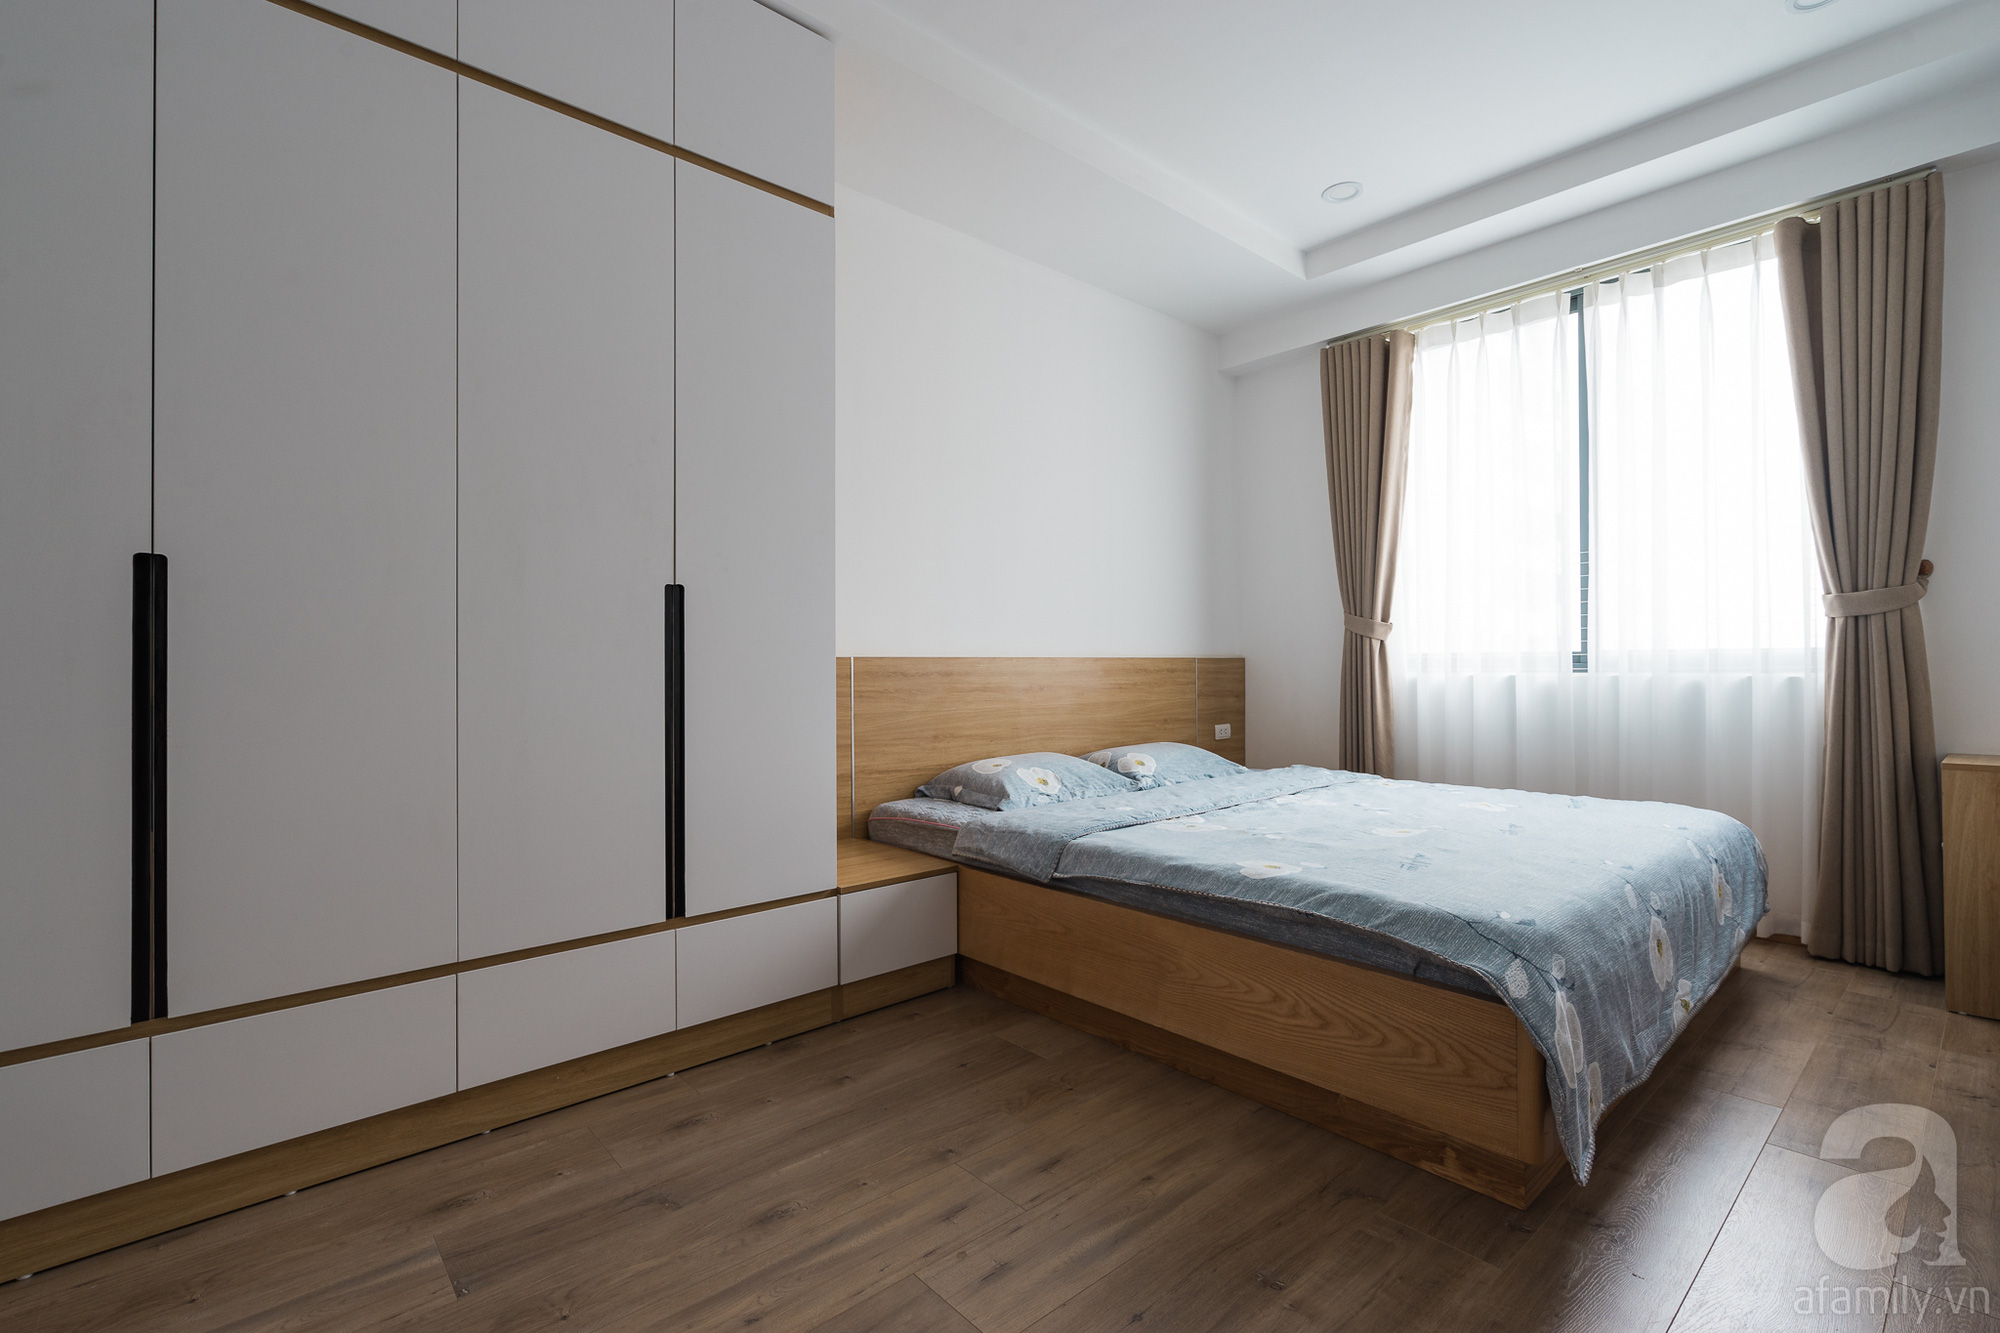 Tư vấn thiết kế căn hộ 110m2 với 3 phòng ngủ tiện nghi ở chung cư Ecolife, Tây Hồ với chi phí hoàn thiện nội thất 290 triệu - Ảnh 14.